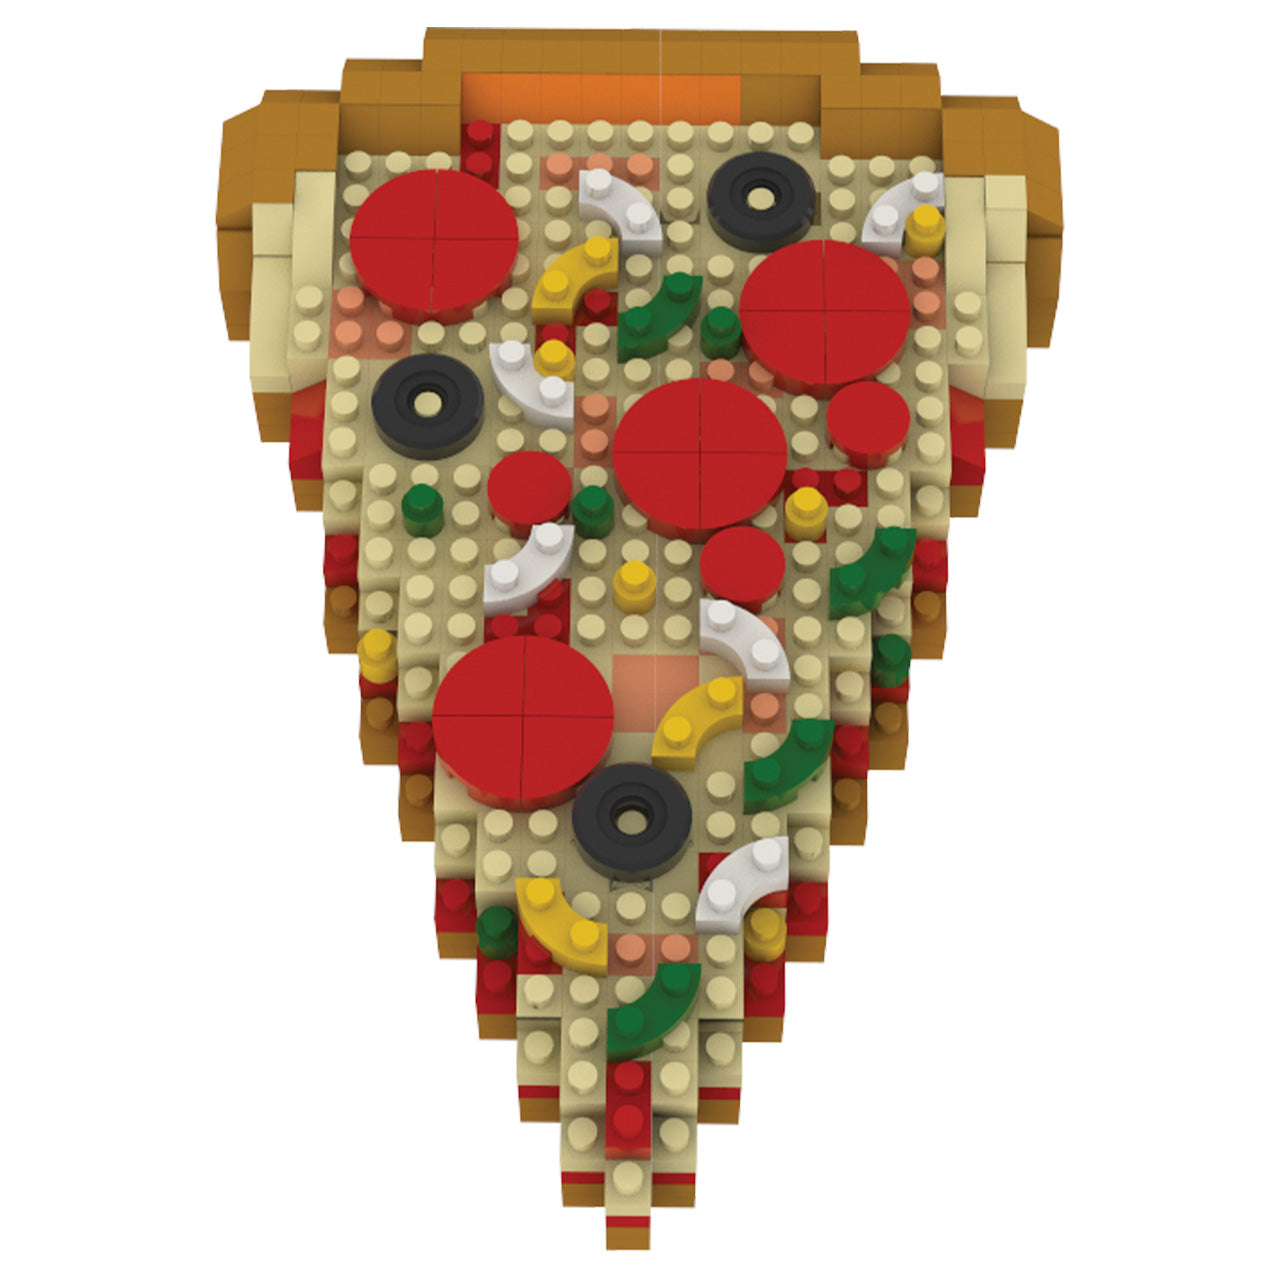 NY Pizza